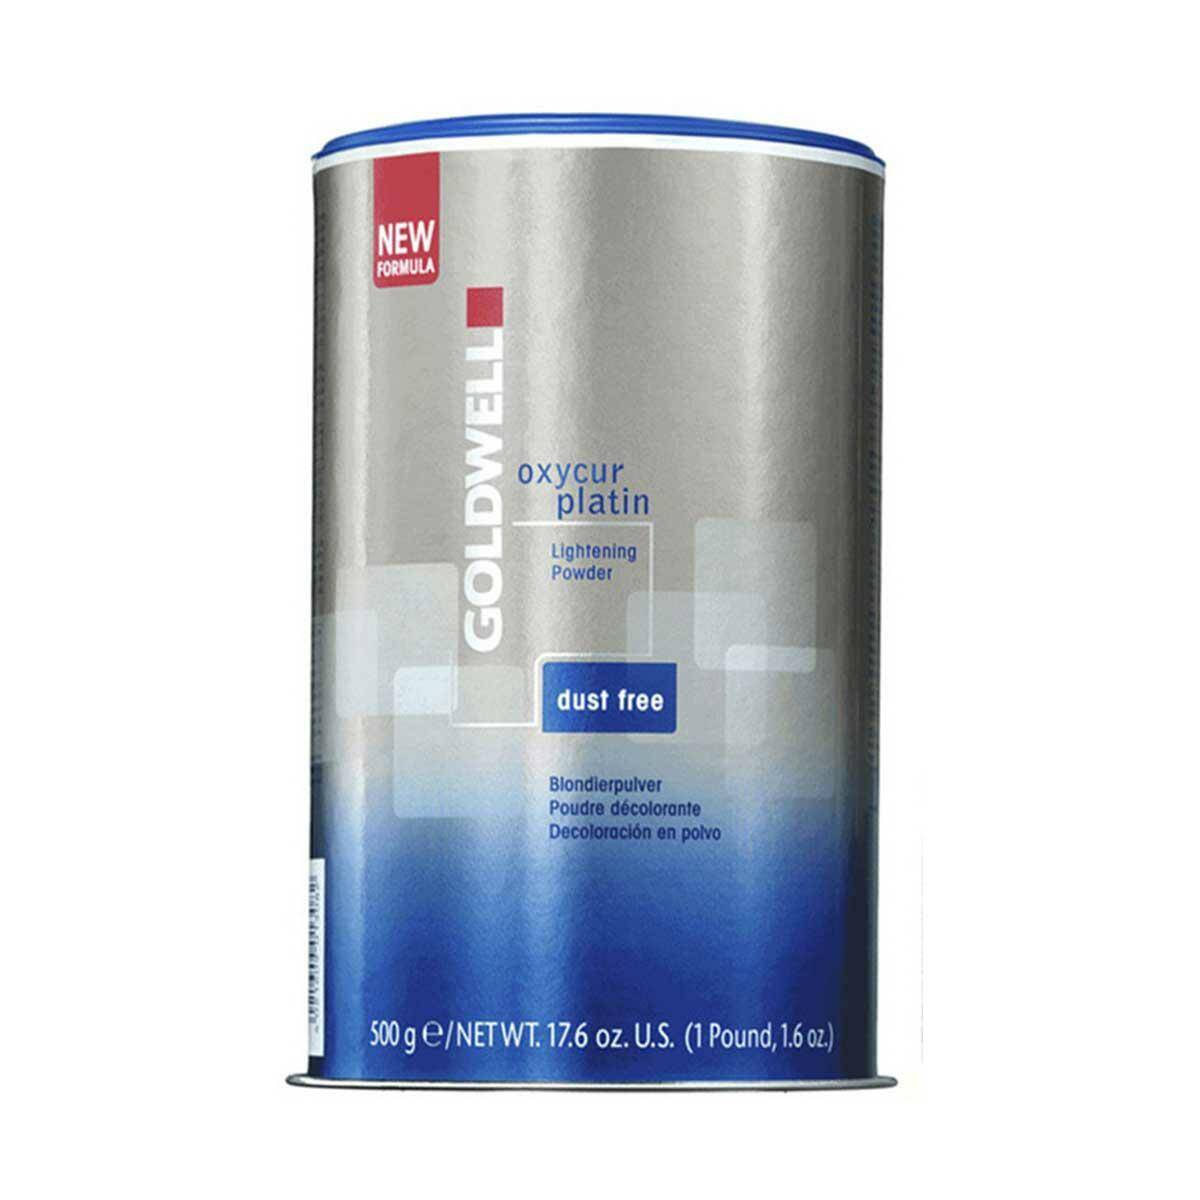 Goldwell Oxycur Platin Dust Free, Rozjaśniacz do włosów w proszku 500g